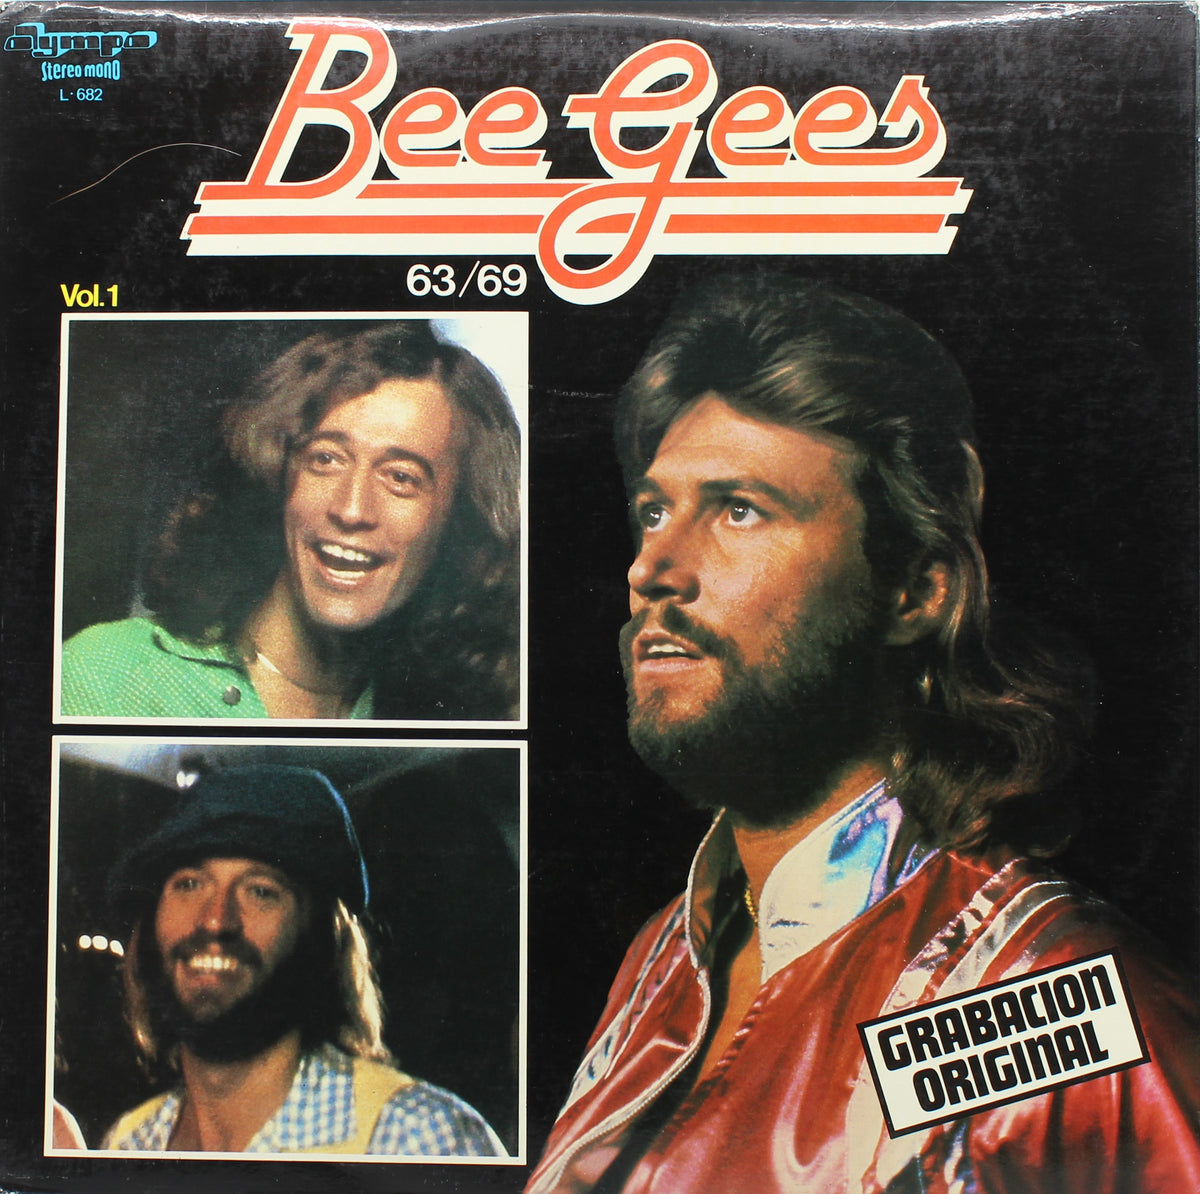 Bee Gees – 63/69 (Vol.1), Vinyl, LP, Compilation, Spain